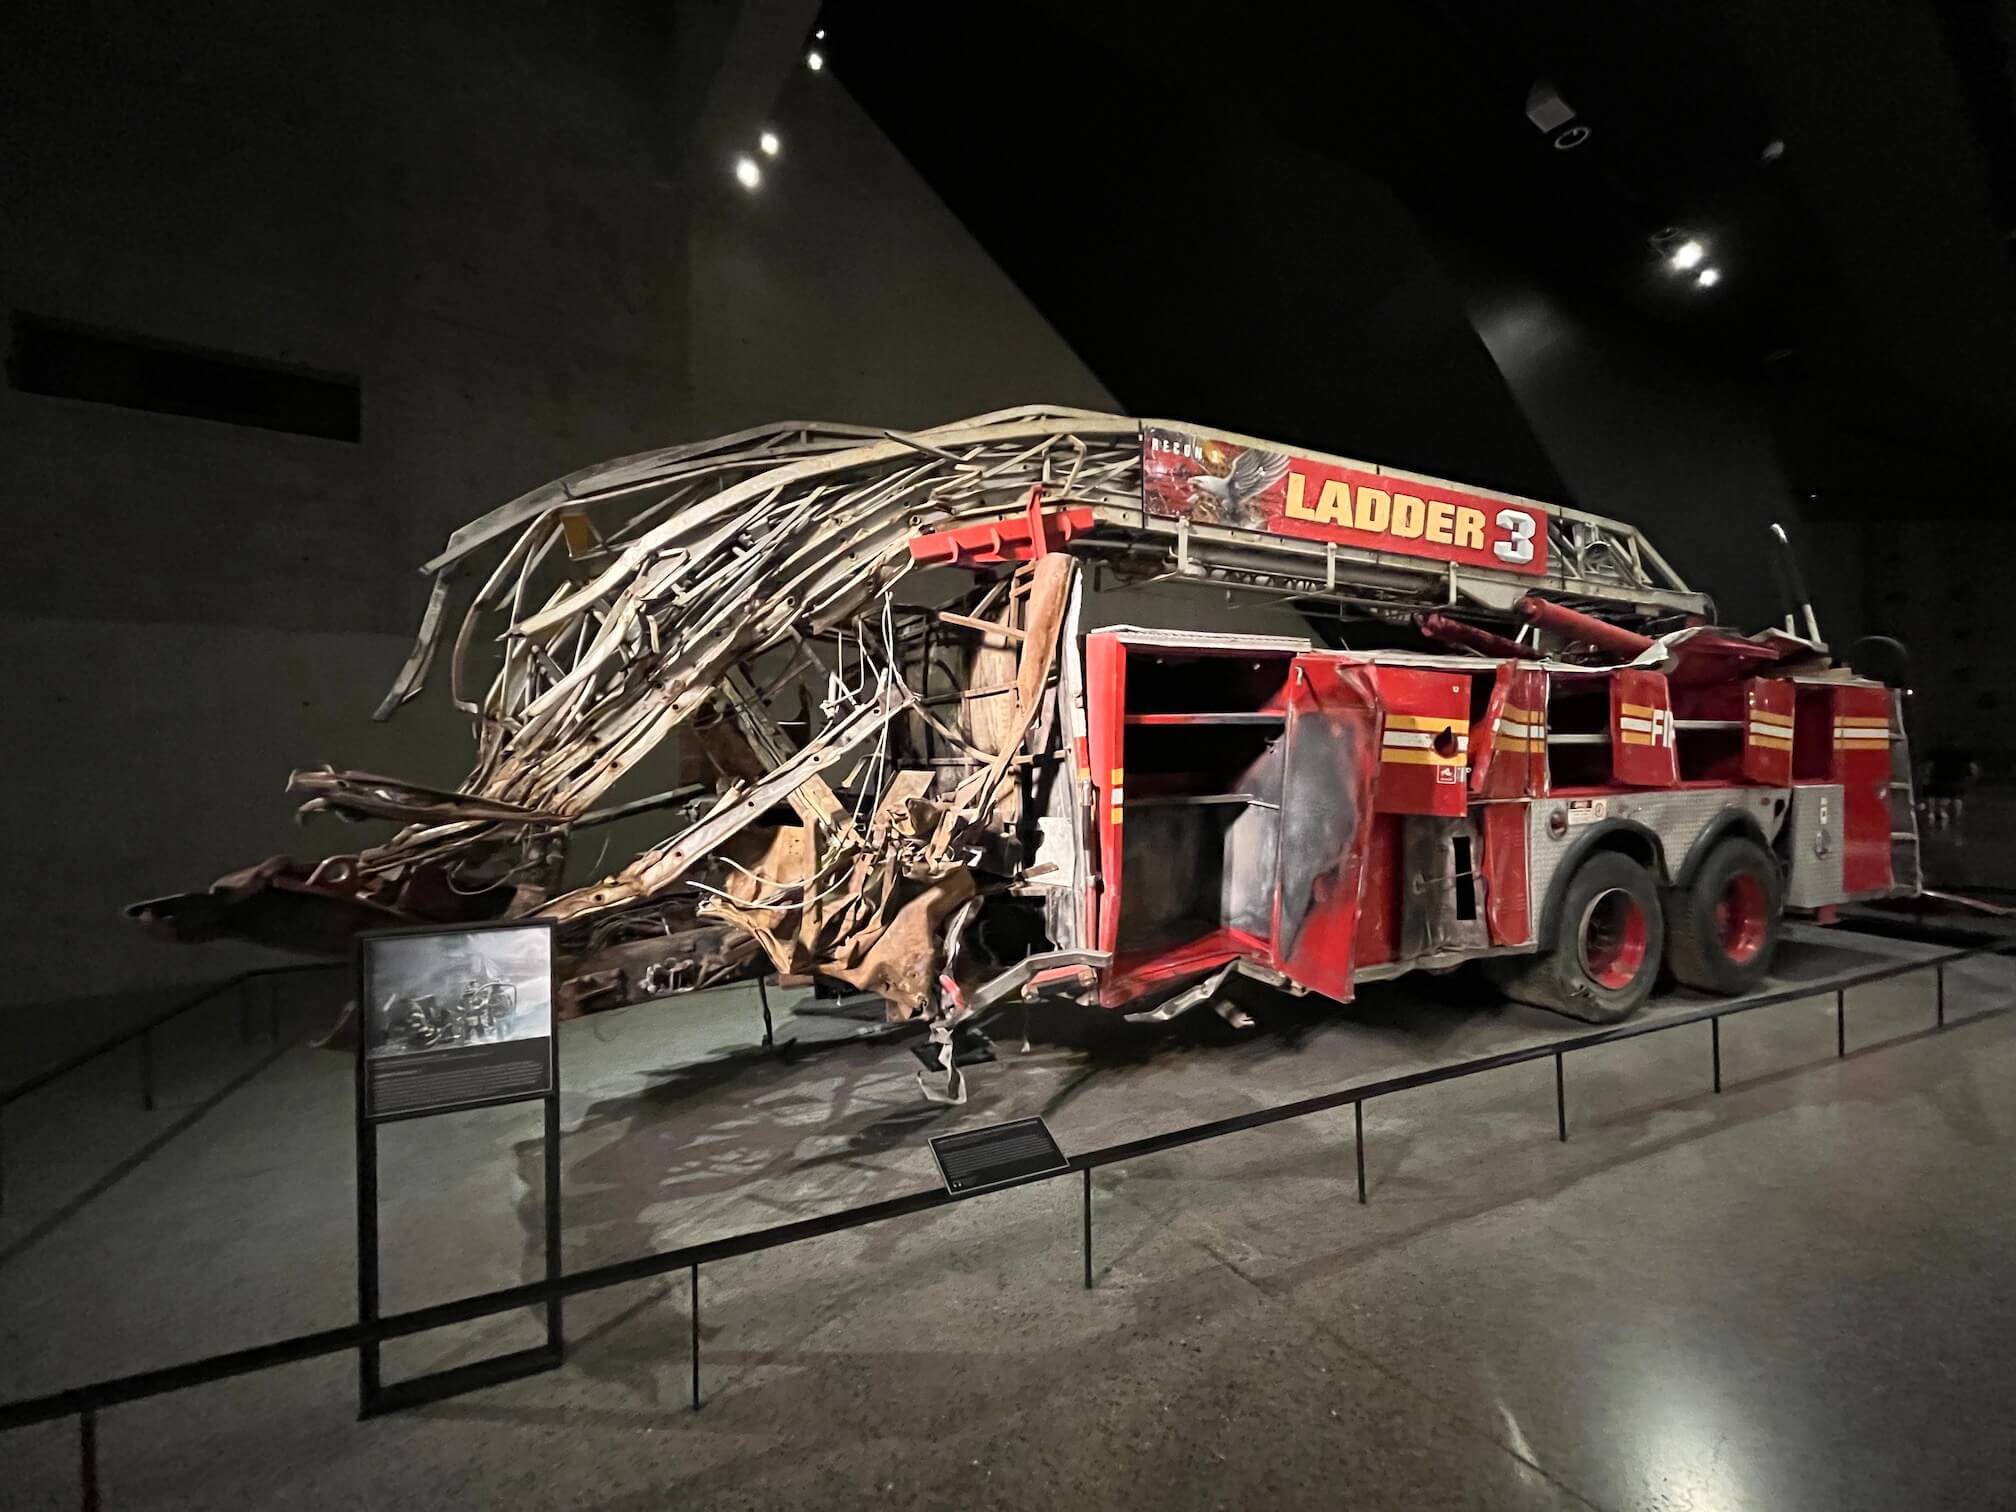 Museum 9/11